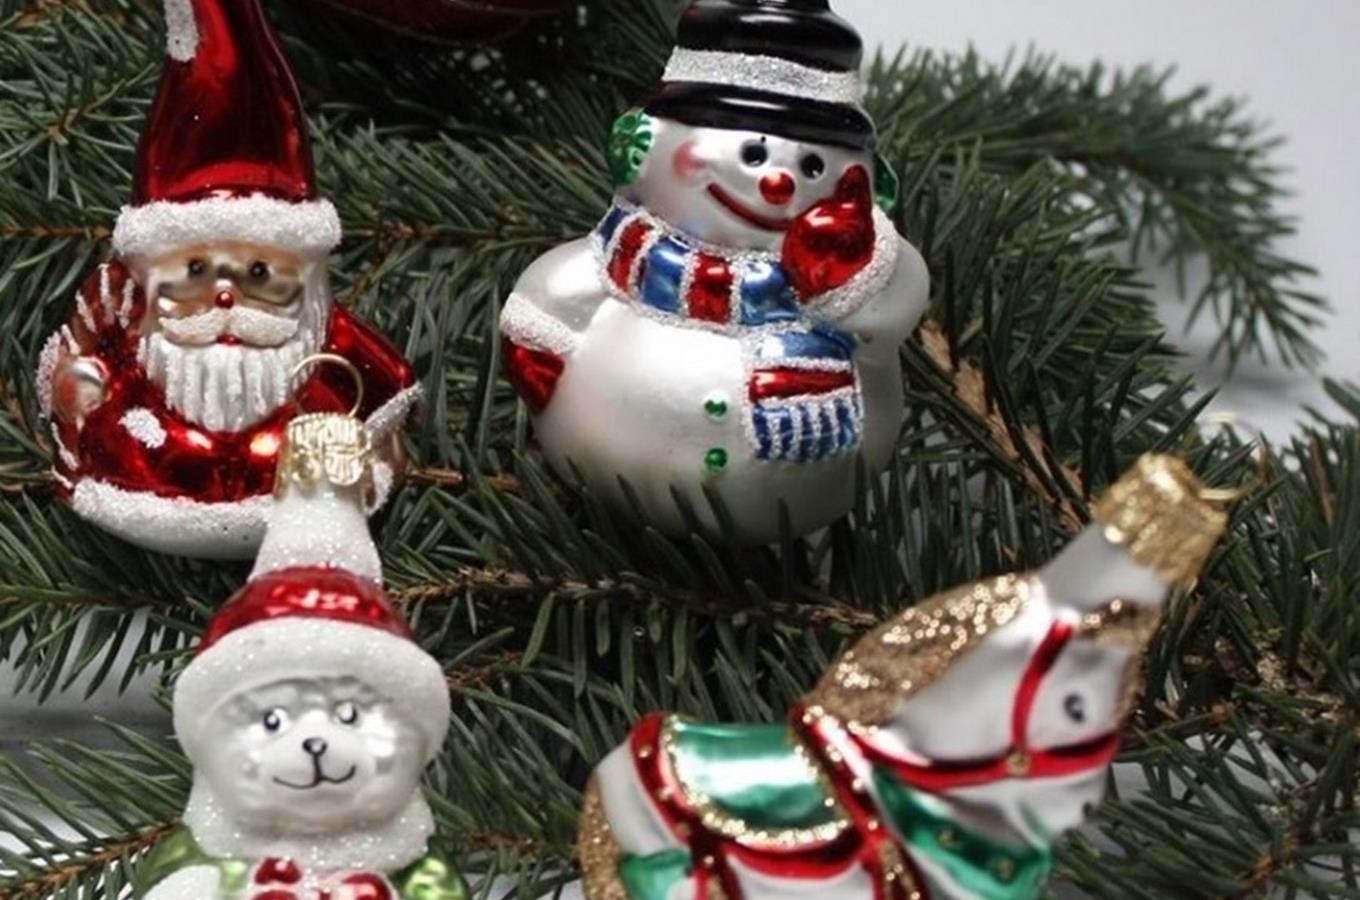 Slezská tvorba Opava – exkurze do výrobny tradičních skleněných vánočních ozdob